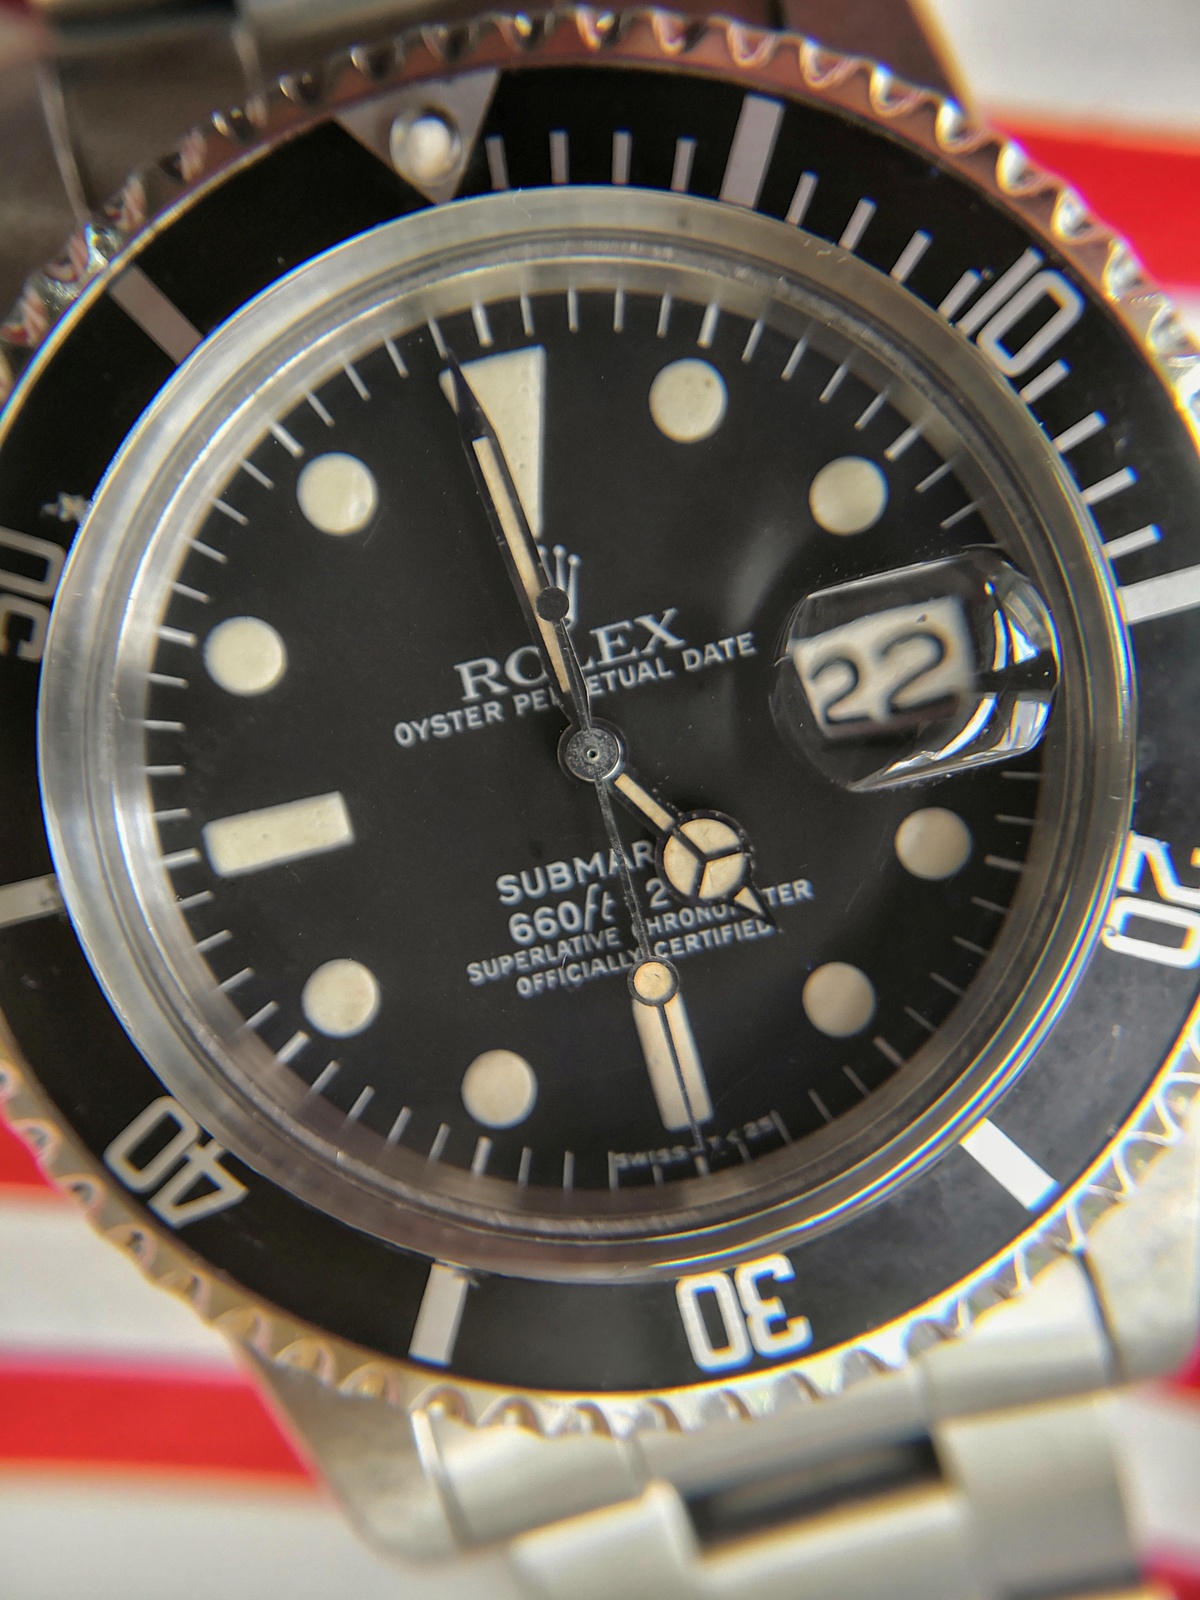 Rolex 1680 mk1